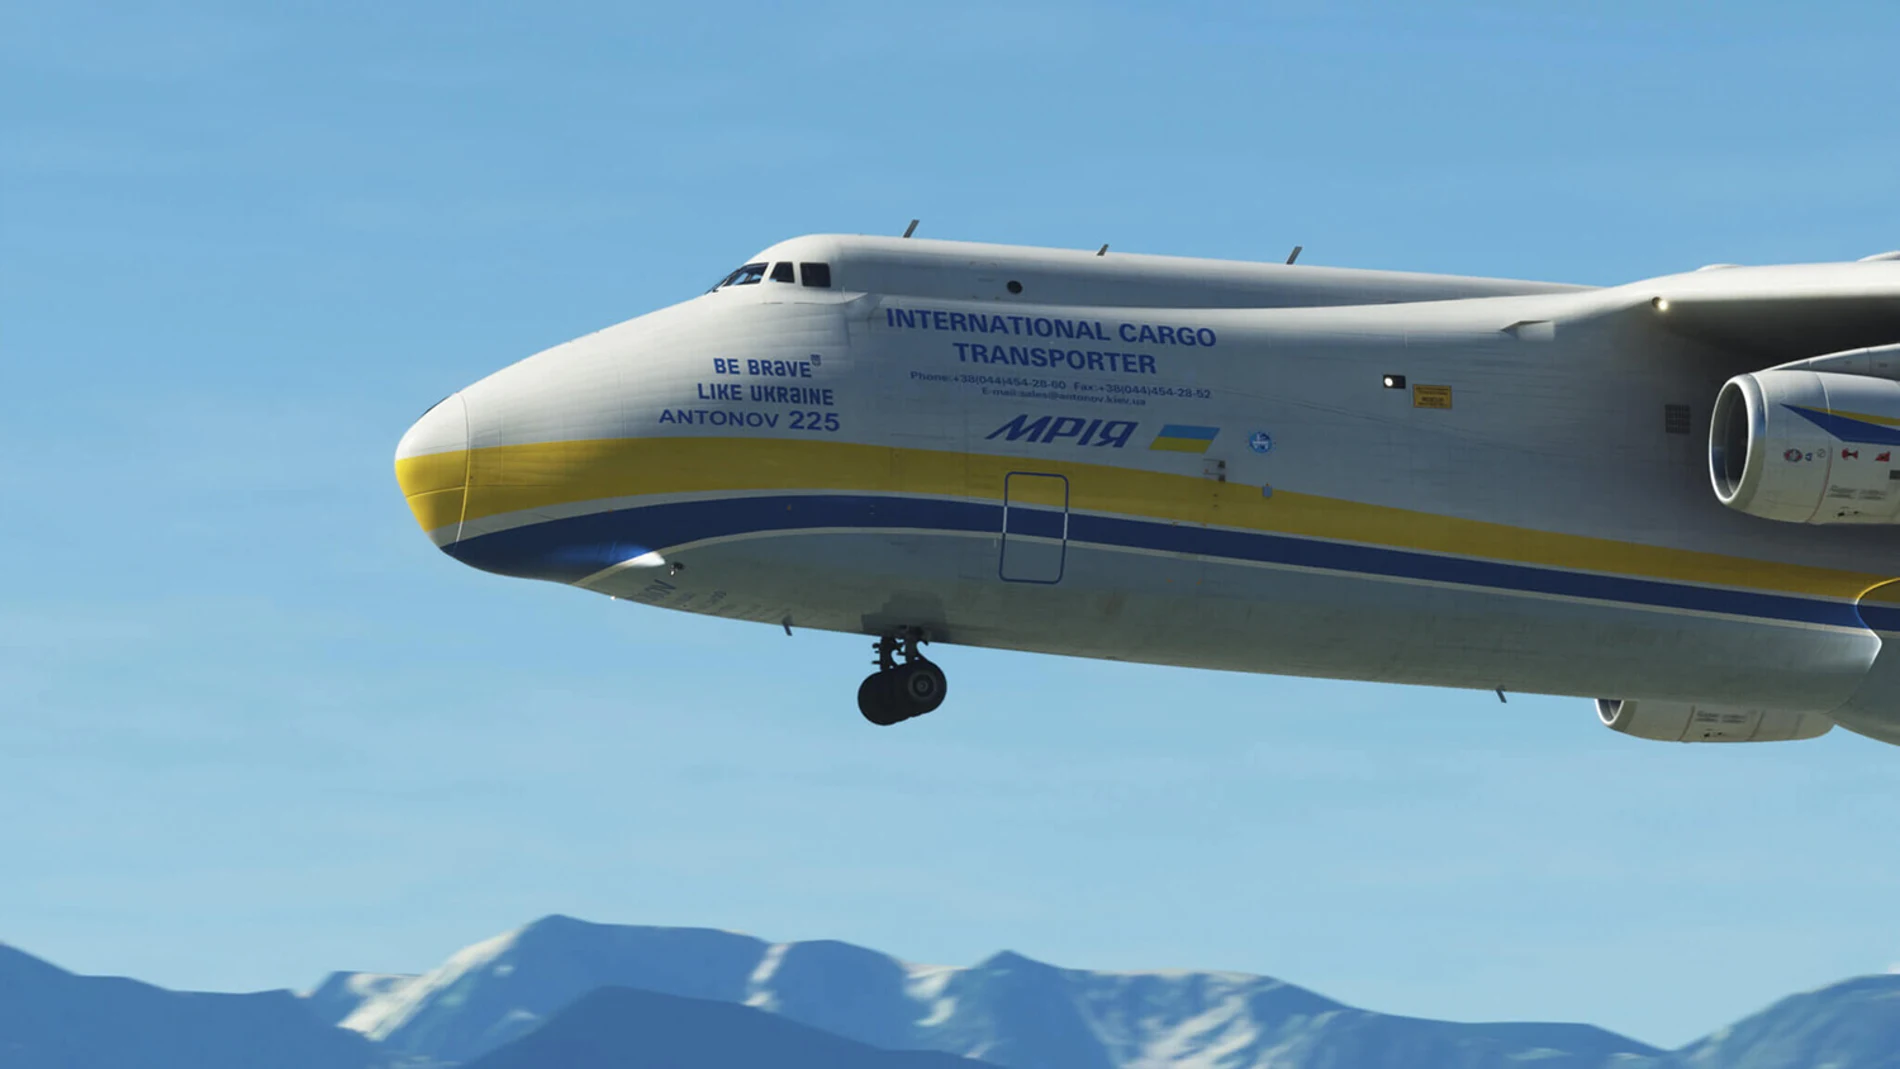 Microsoft Flight Simulator recrea el extinto Antonov An-225 como forma de preservar la histórica nave.